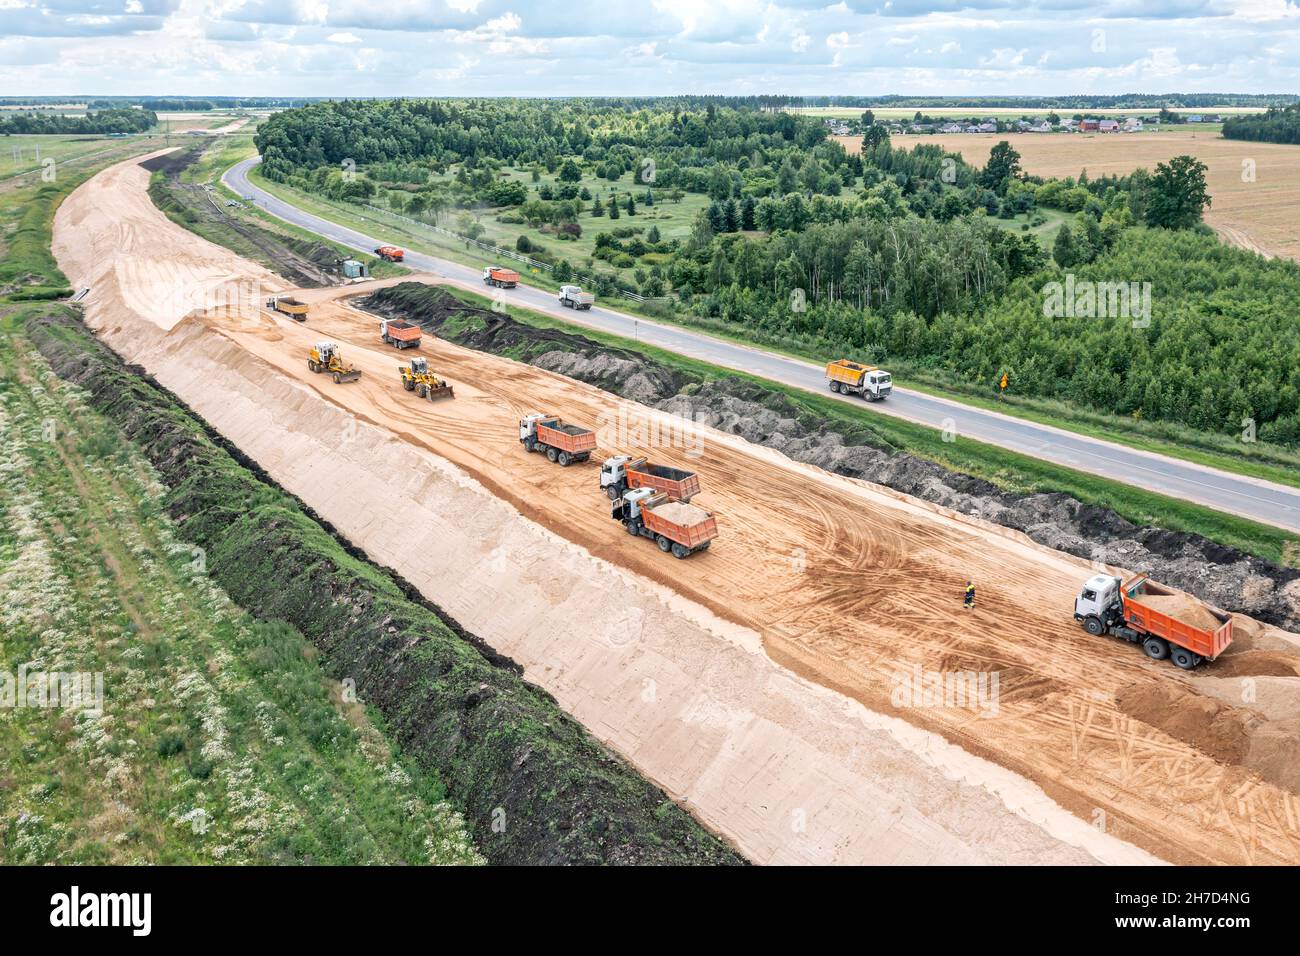 vue panoramique aérienne d'un grand chantier de construction de routes avec des machines lourdes - bulldozer, niveleuse, terrassement et camions à benne basculante Banque D'Images